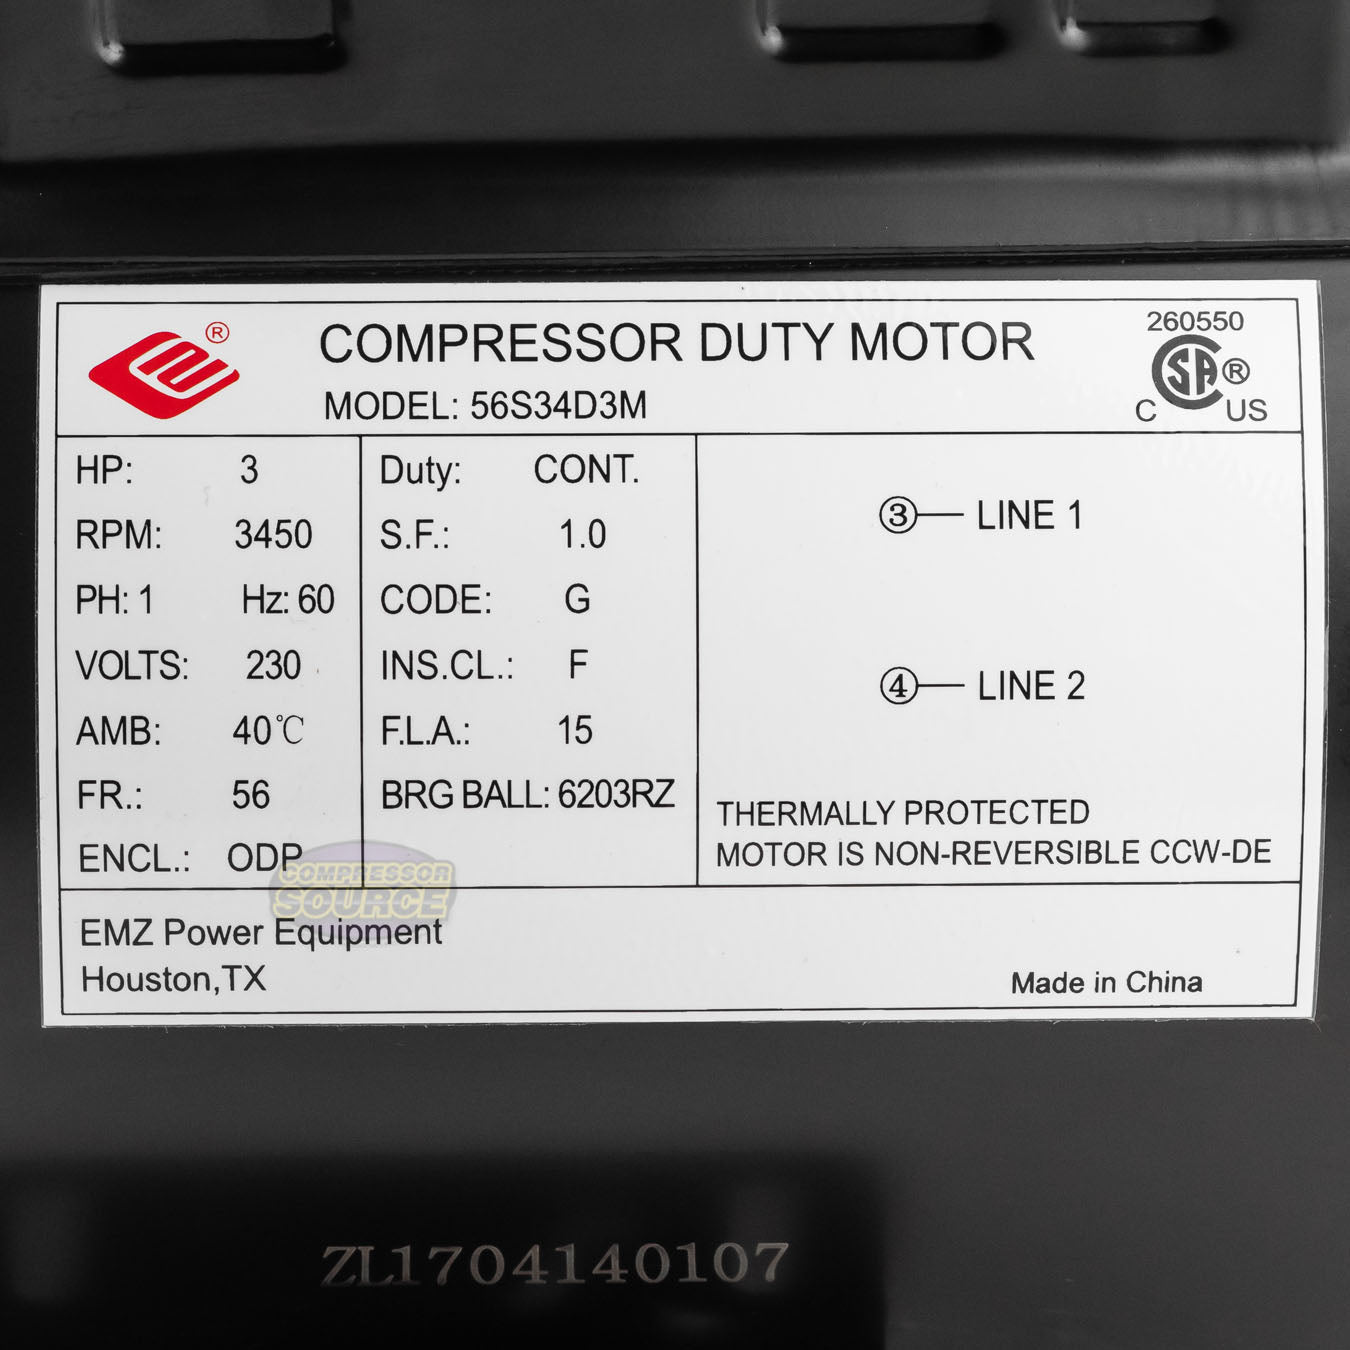 3 HP 3450 RPM Electric Motor Compressor Duty 56 Frame 1 Phase 5/8" Shaft 230 V